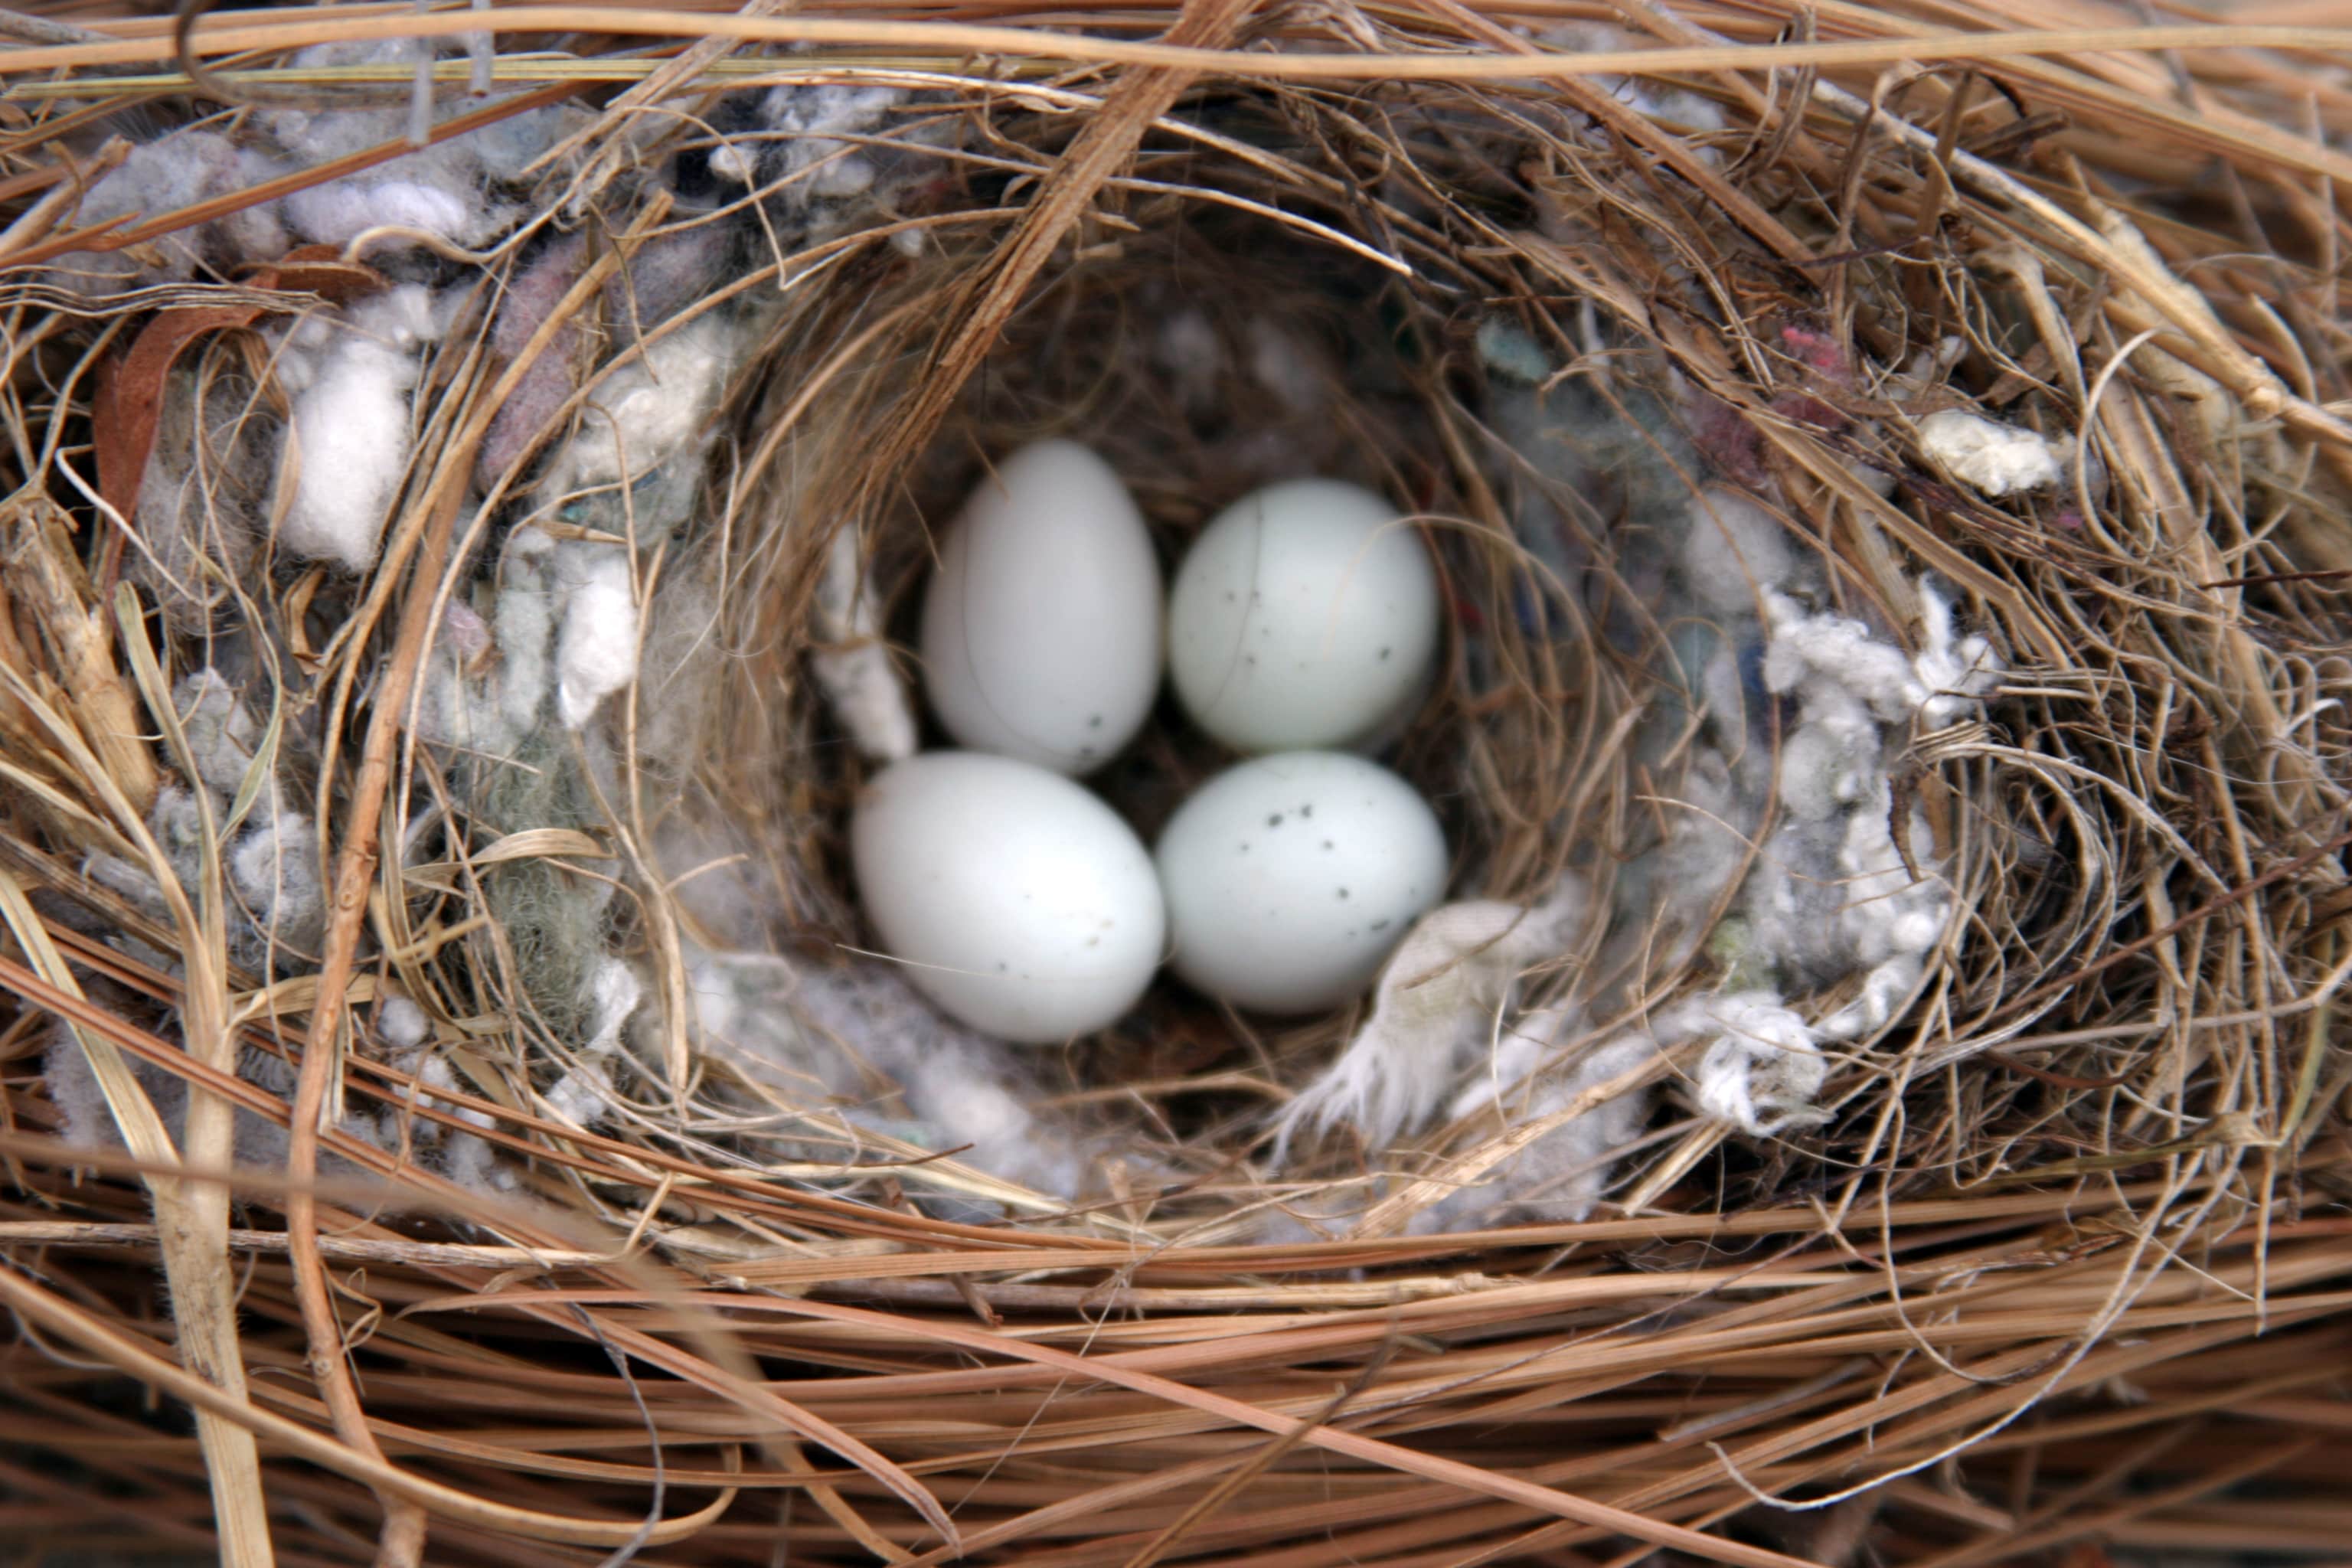 麻雀多长时间产一次卵？麻雀多久生一次蛋？